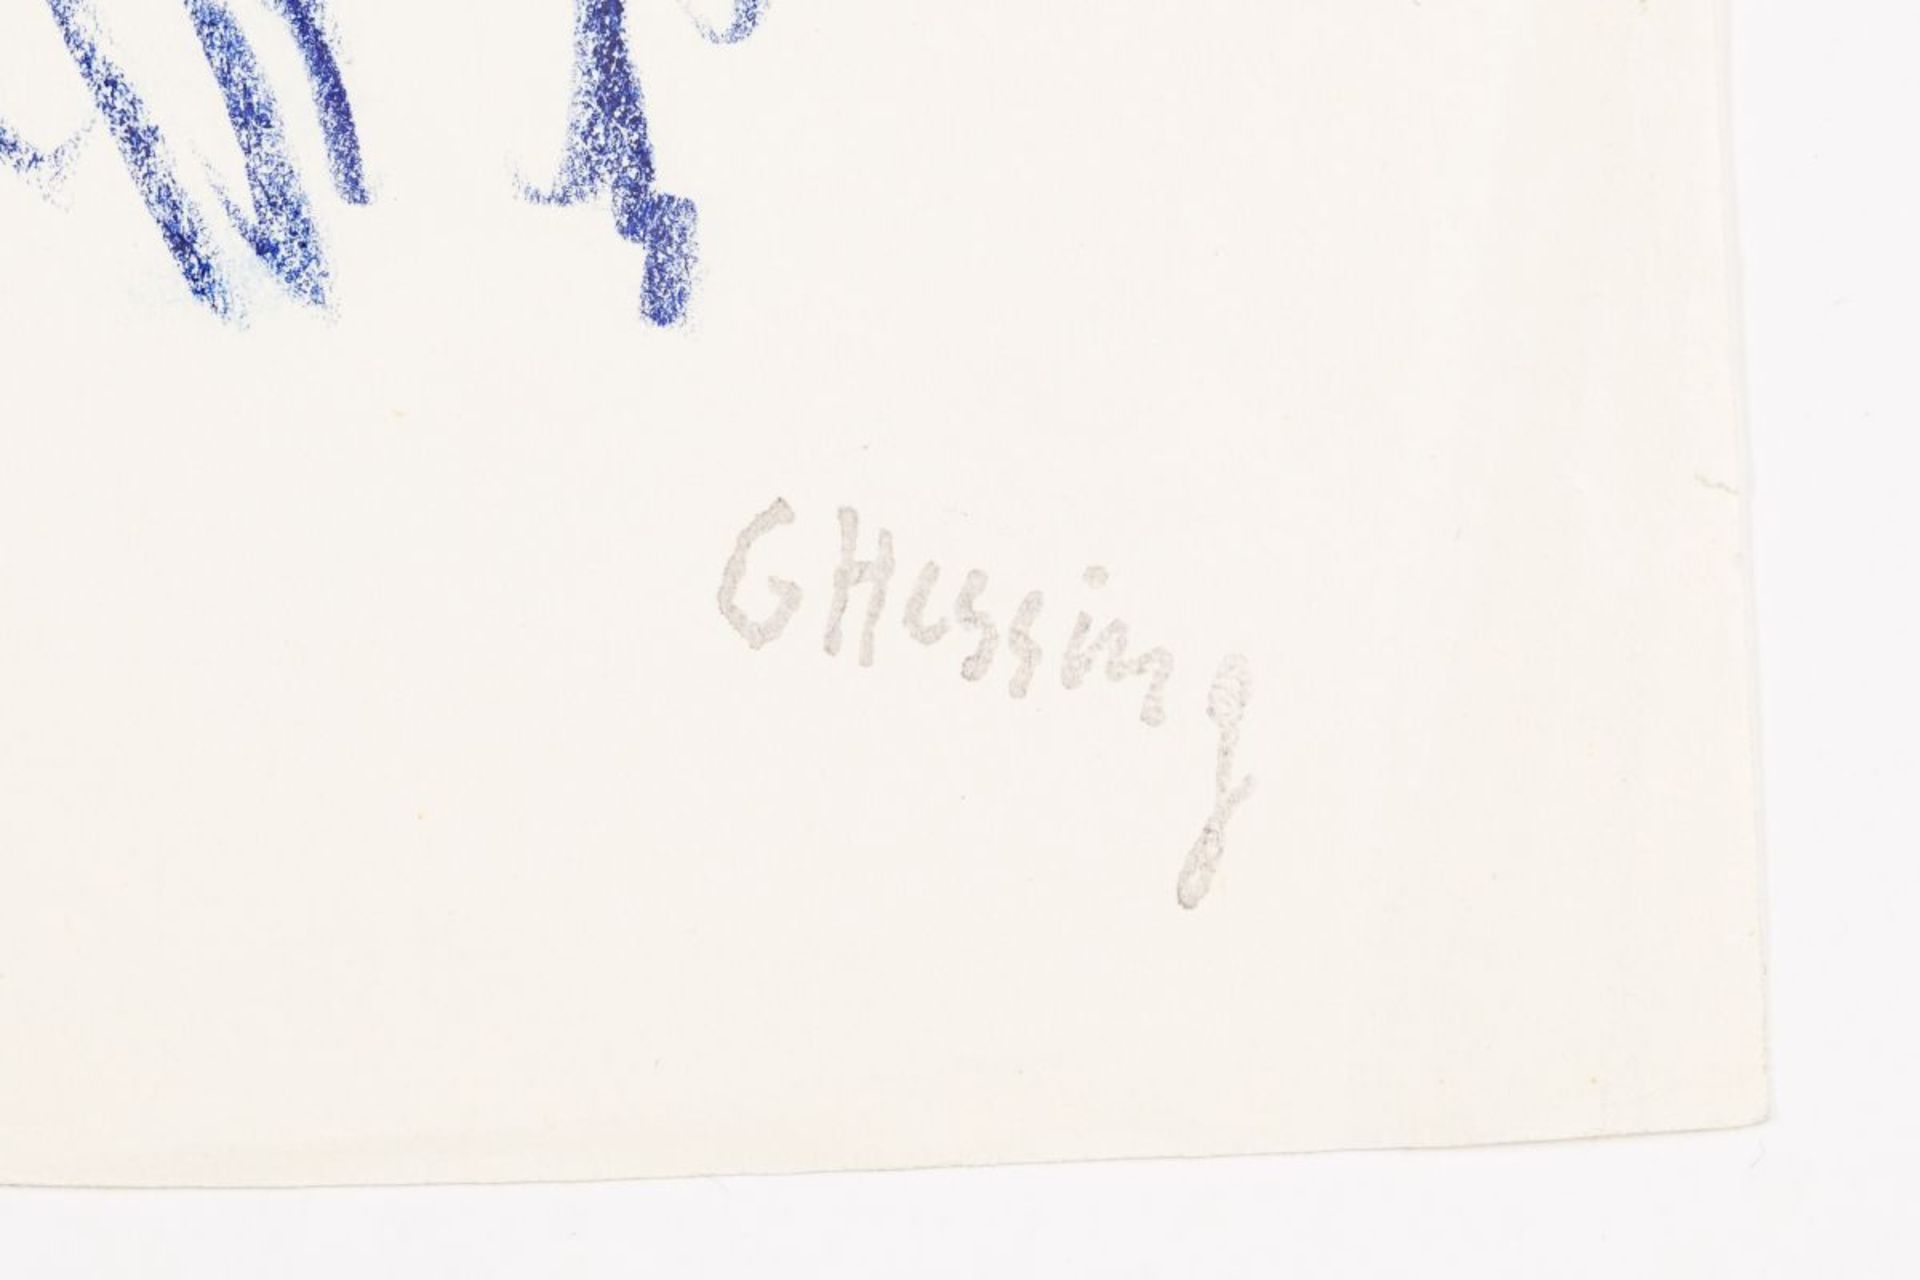 Hessing Gustav , Gunsam Karl Josef - Image 11 of 21